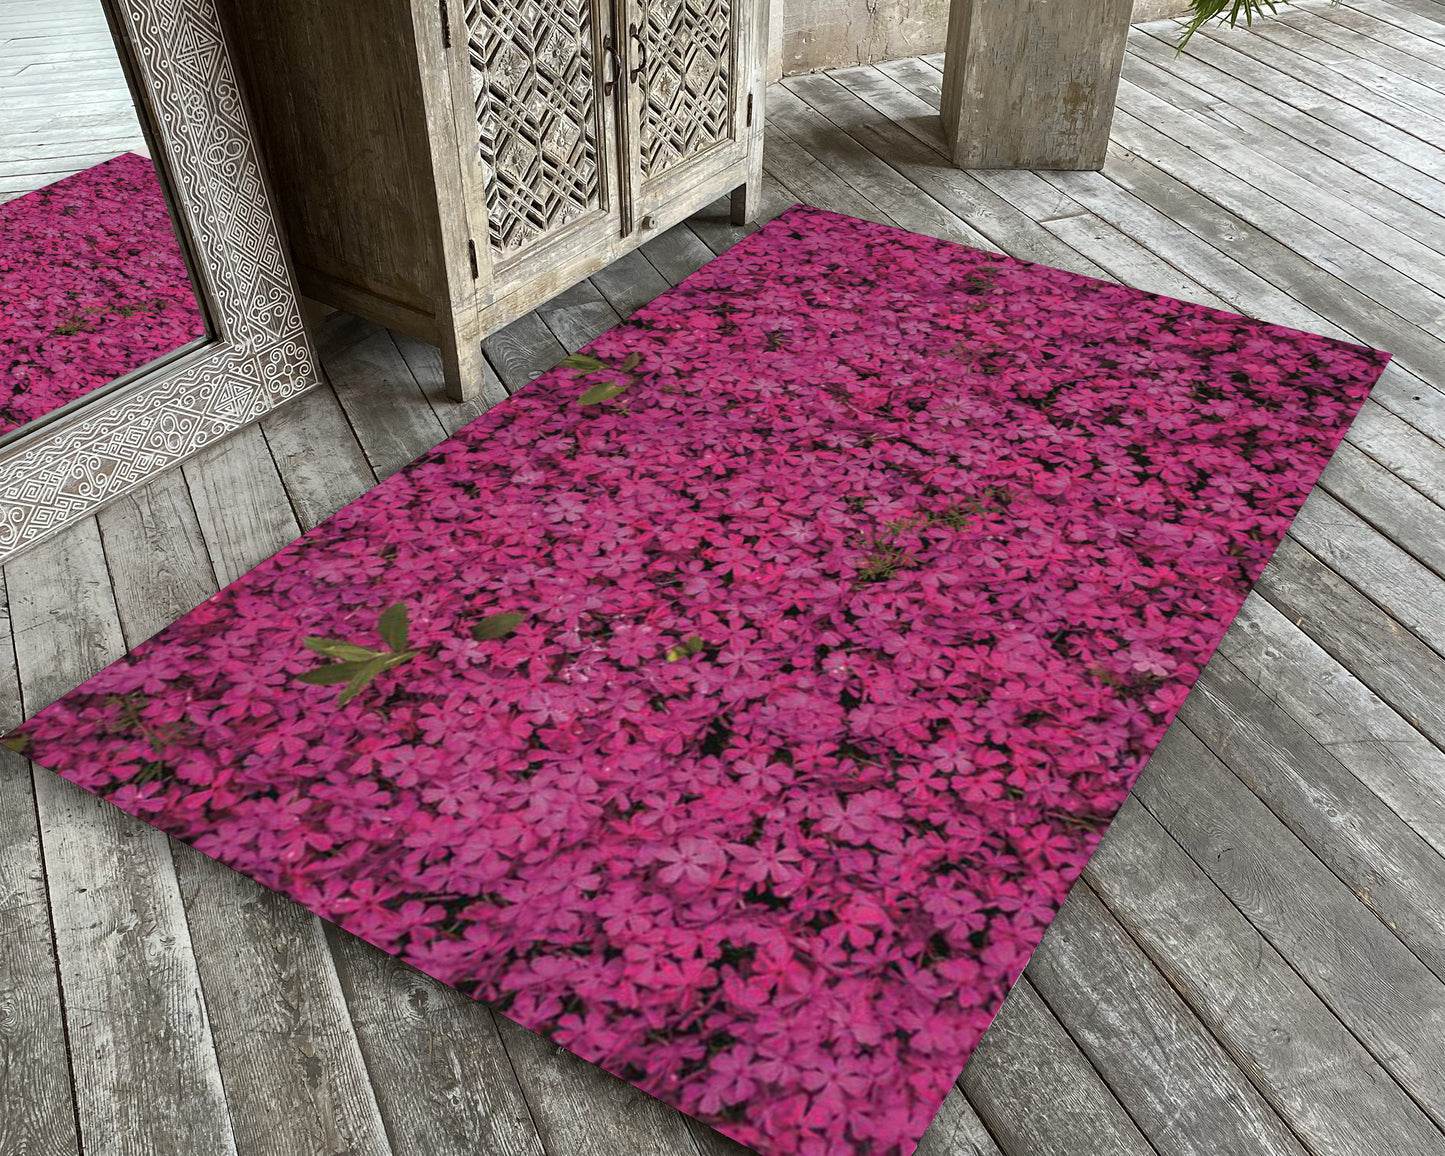 Pink Flower Rug, Floral Carpet, Kids Room Mat, Boho Style Rug, Botanical Decor